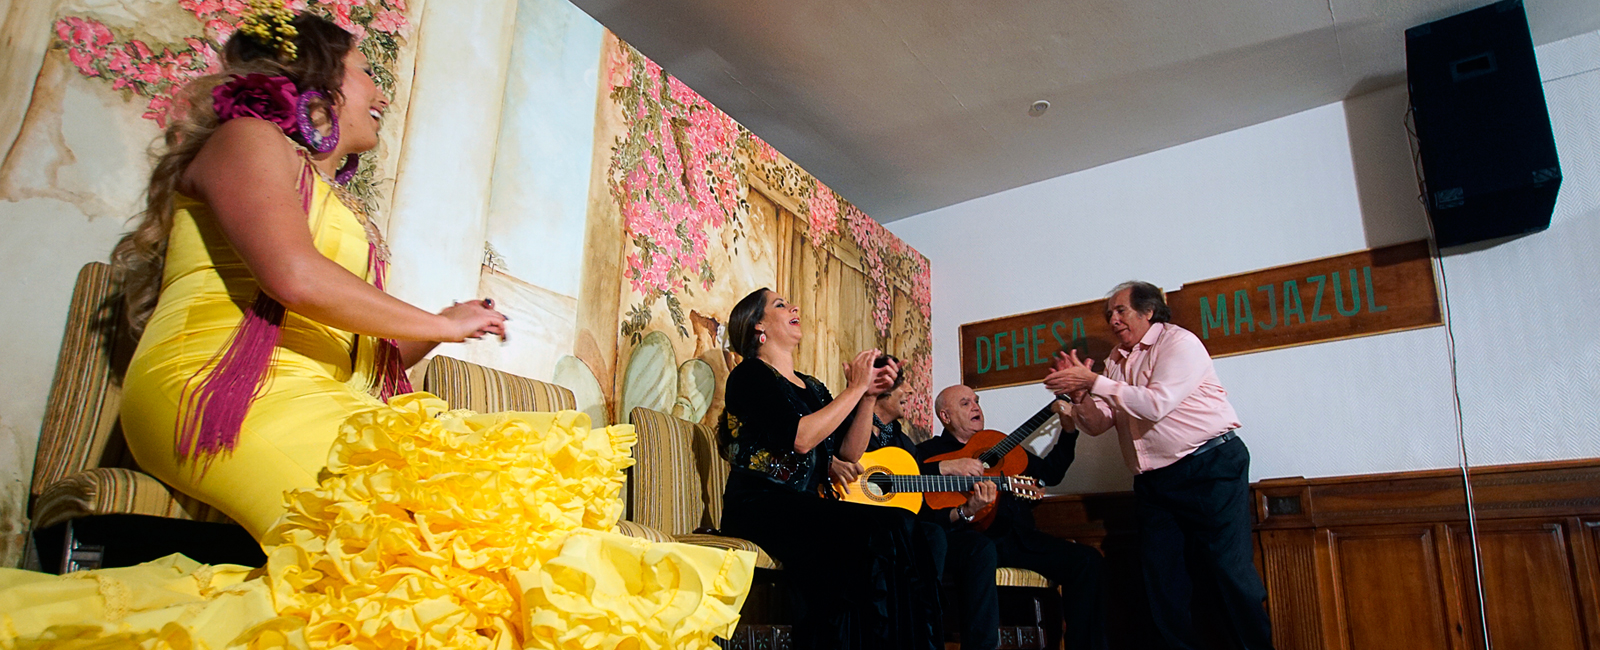 Espectáculo flamenco en Toledo